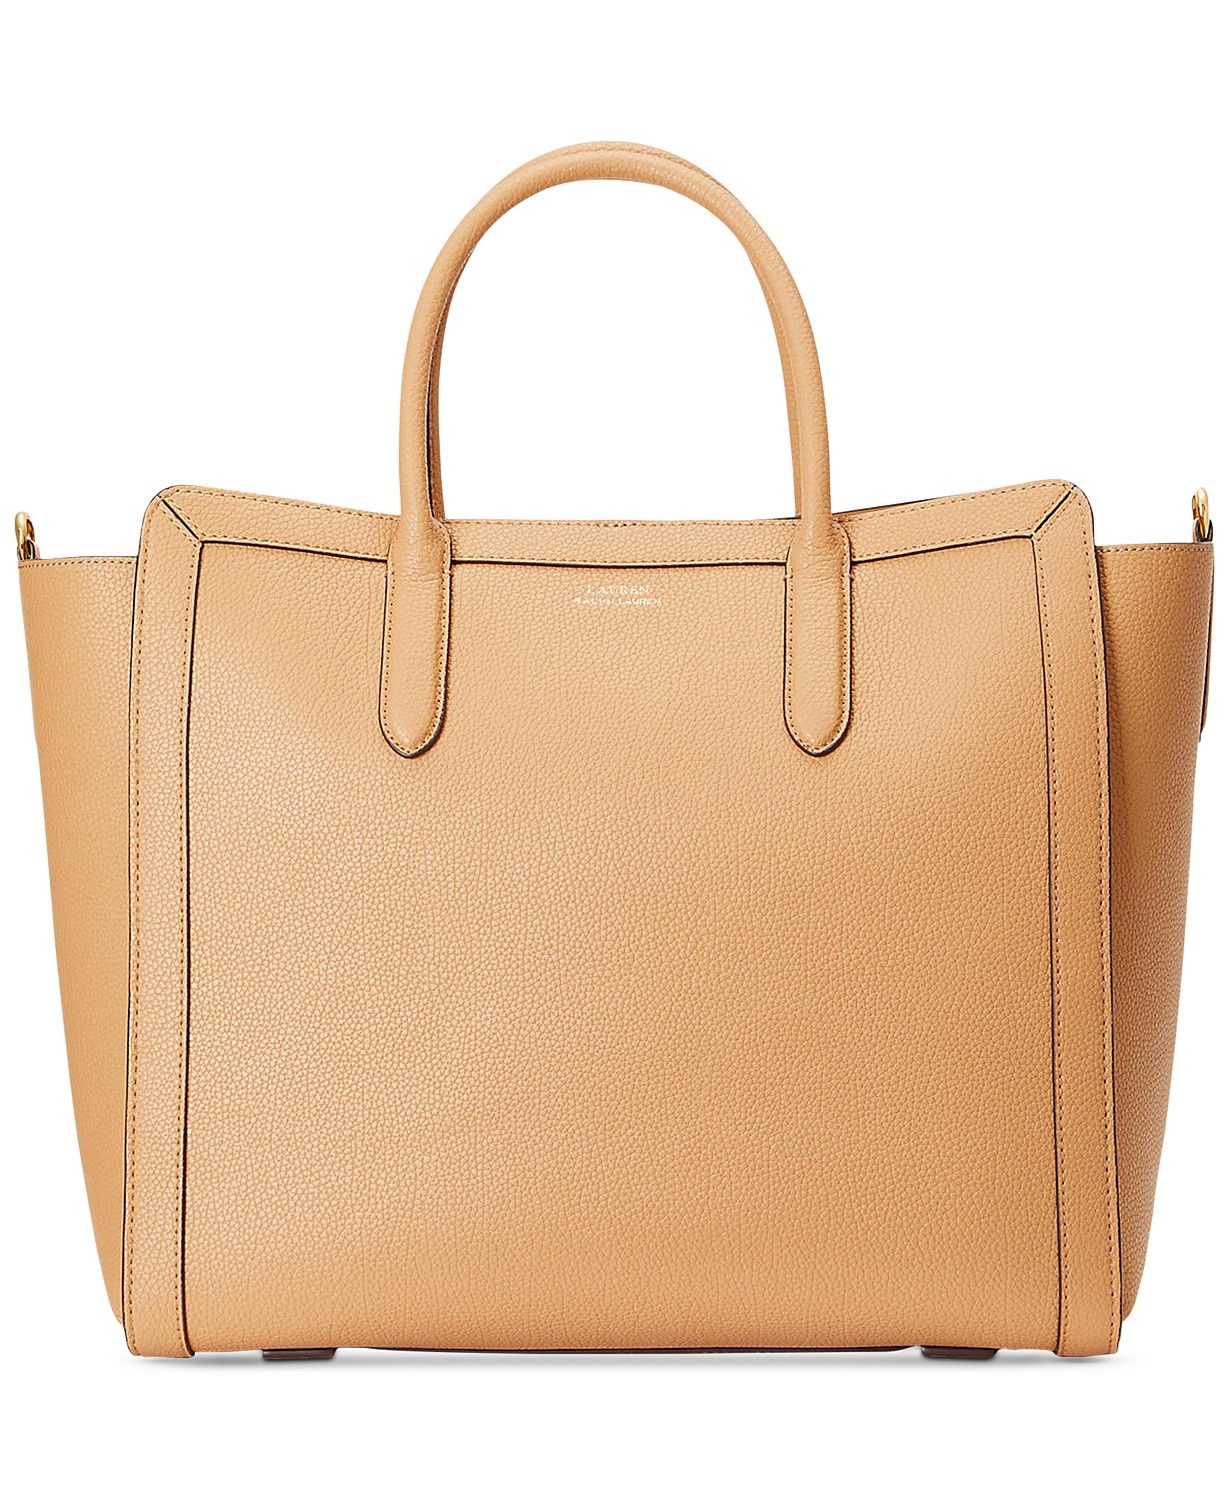 Lauren Ralph Lauren Medium Tyler Tote In Leather & Reviews - Handbags & Accessories - Macy's | Macys (US)